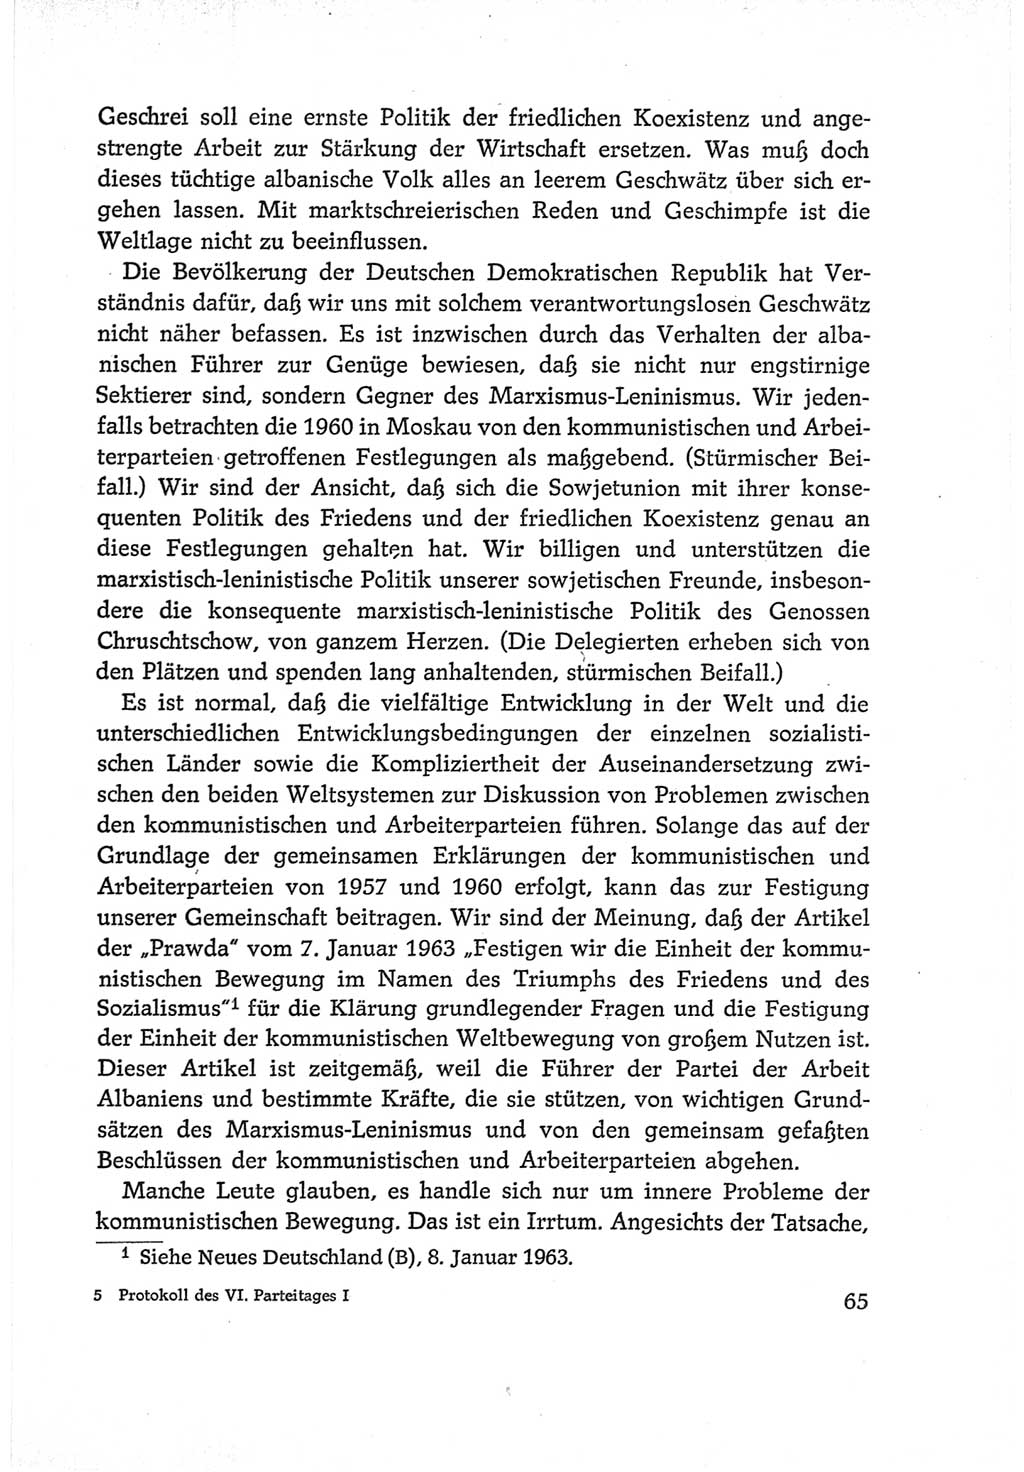 Protokoll der Verhandlungen des Ⅵ. Parteitages der Sozialistischen Einheitspartei Deutschlands (SED) [Deutsche Demokratische Republik (DDR)] 1963, Band Ⅰ, Seite 65 (Prot. Verh. Ⅵ. PT SED DDR 1963, Bd. Ⅰ, S. 65)